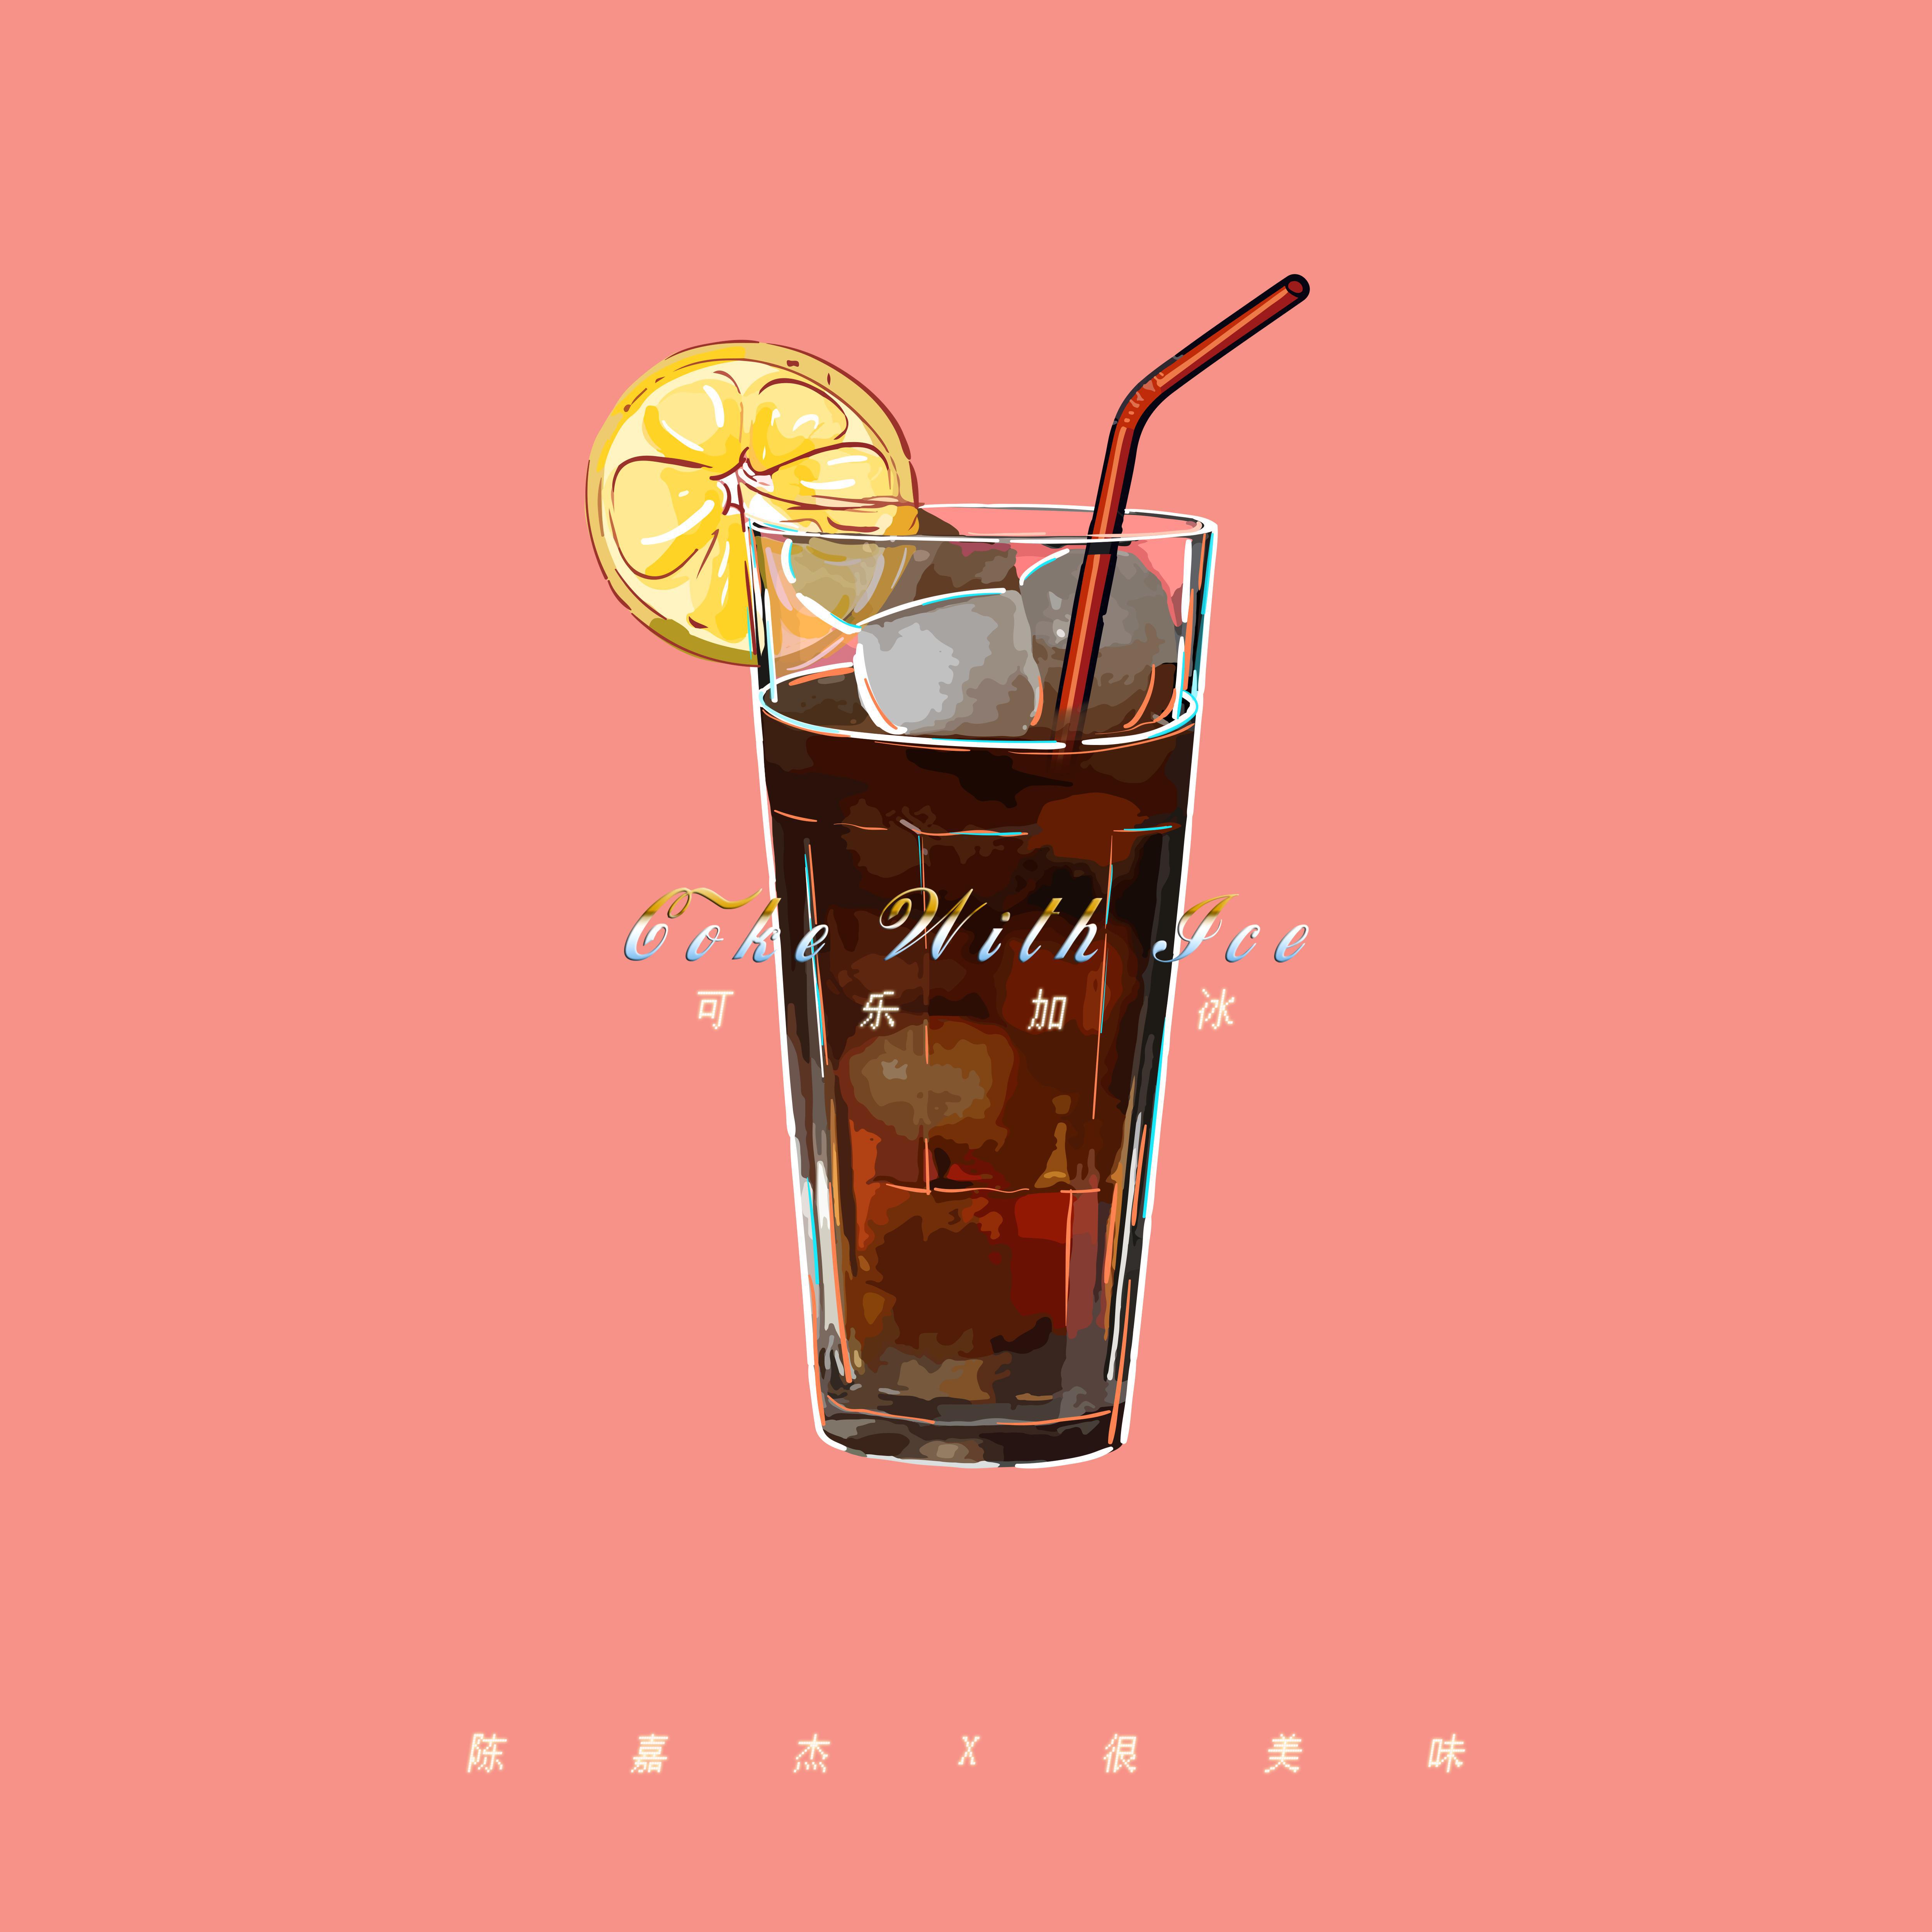 可乐加冰 coke with ice 歌手:陈嘉杰 / 很美味 所属专辑:可乐加冰